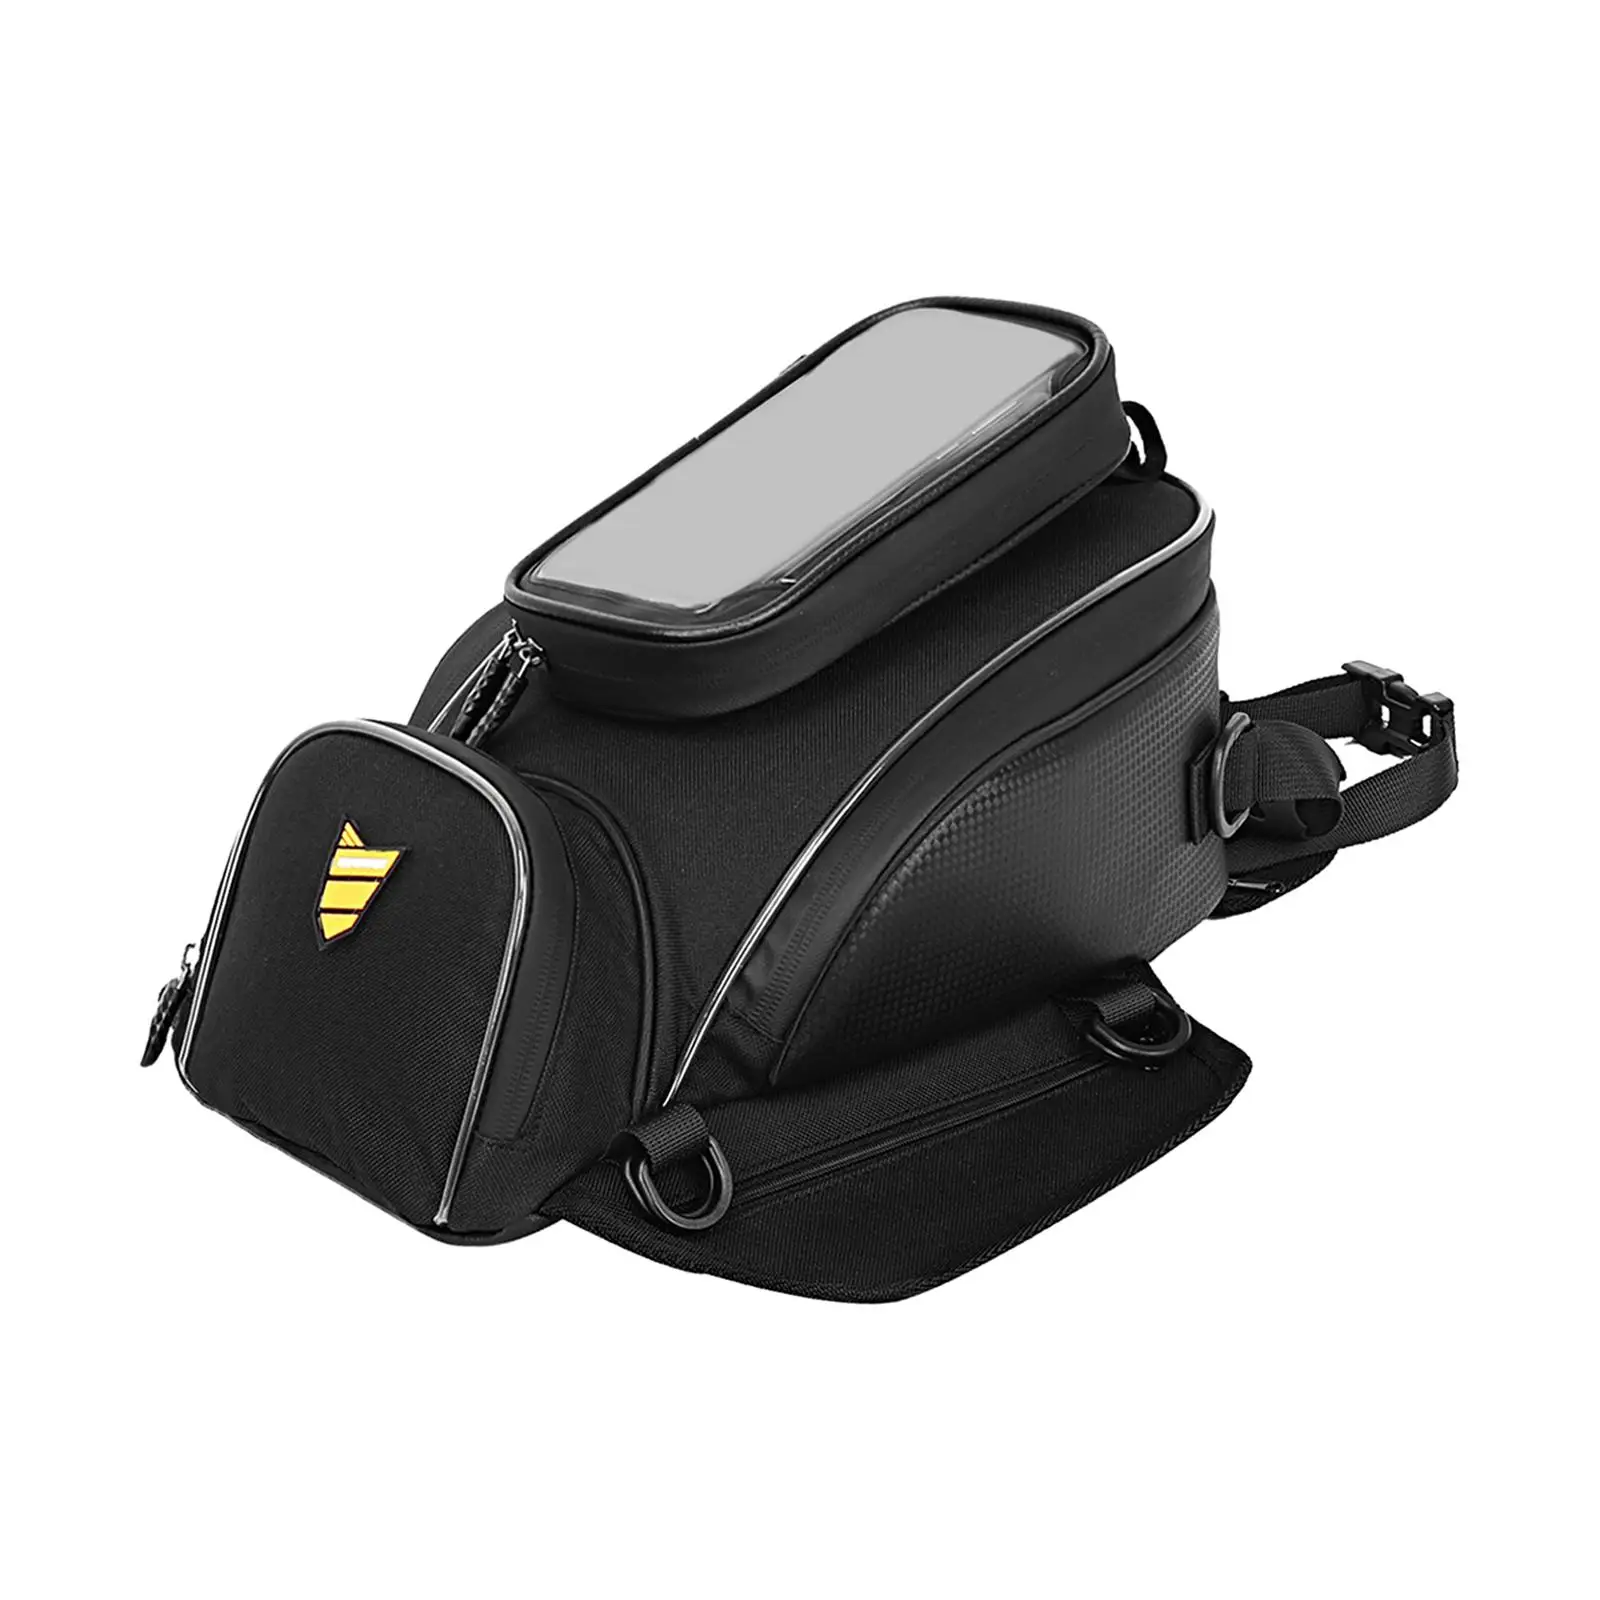 Universal Motorcycle Tank Bag Water Resistant wear Resistant Black